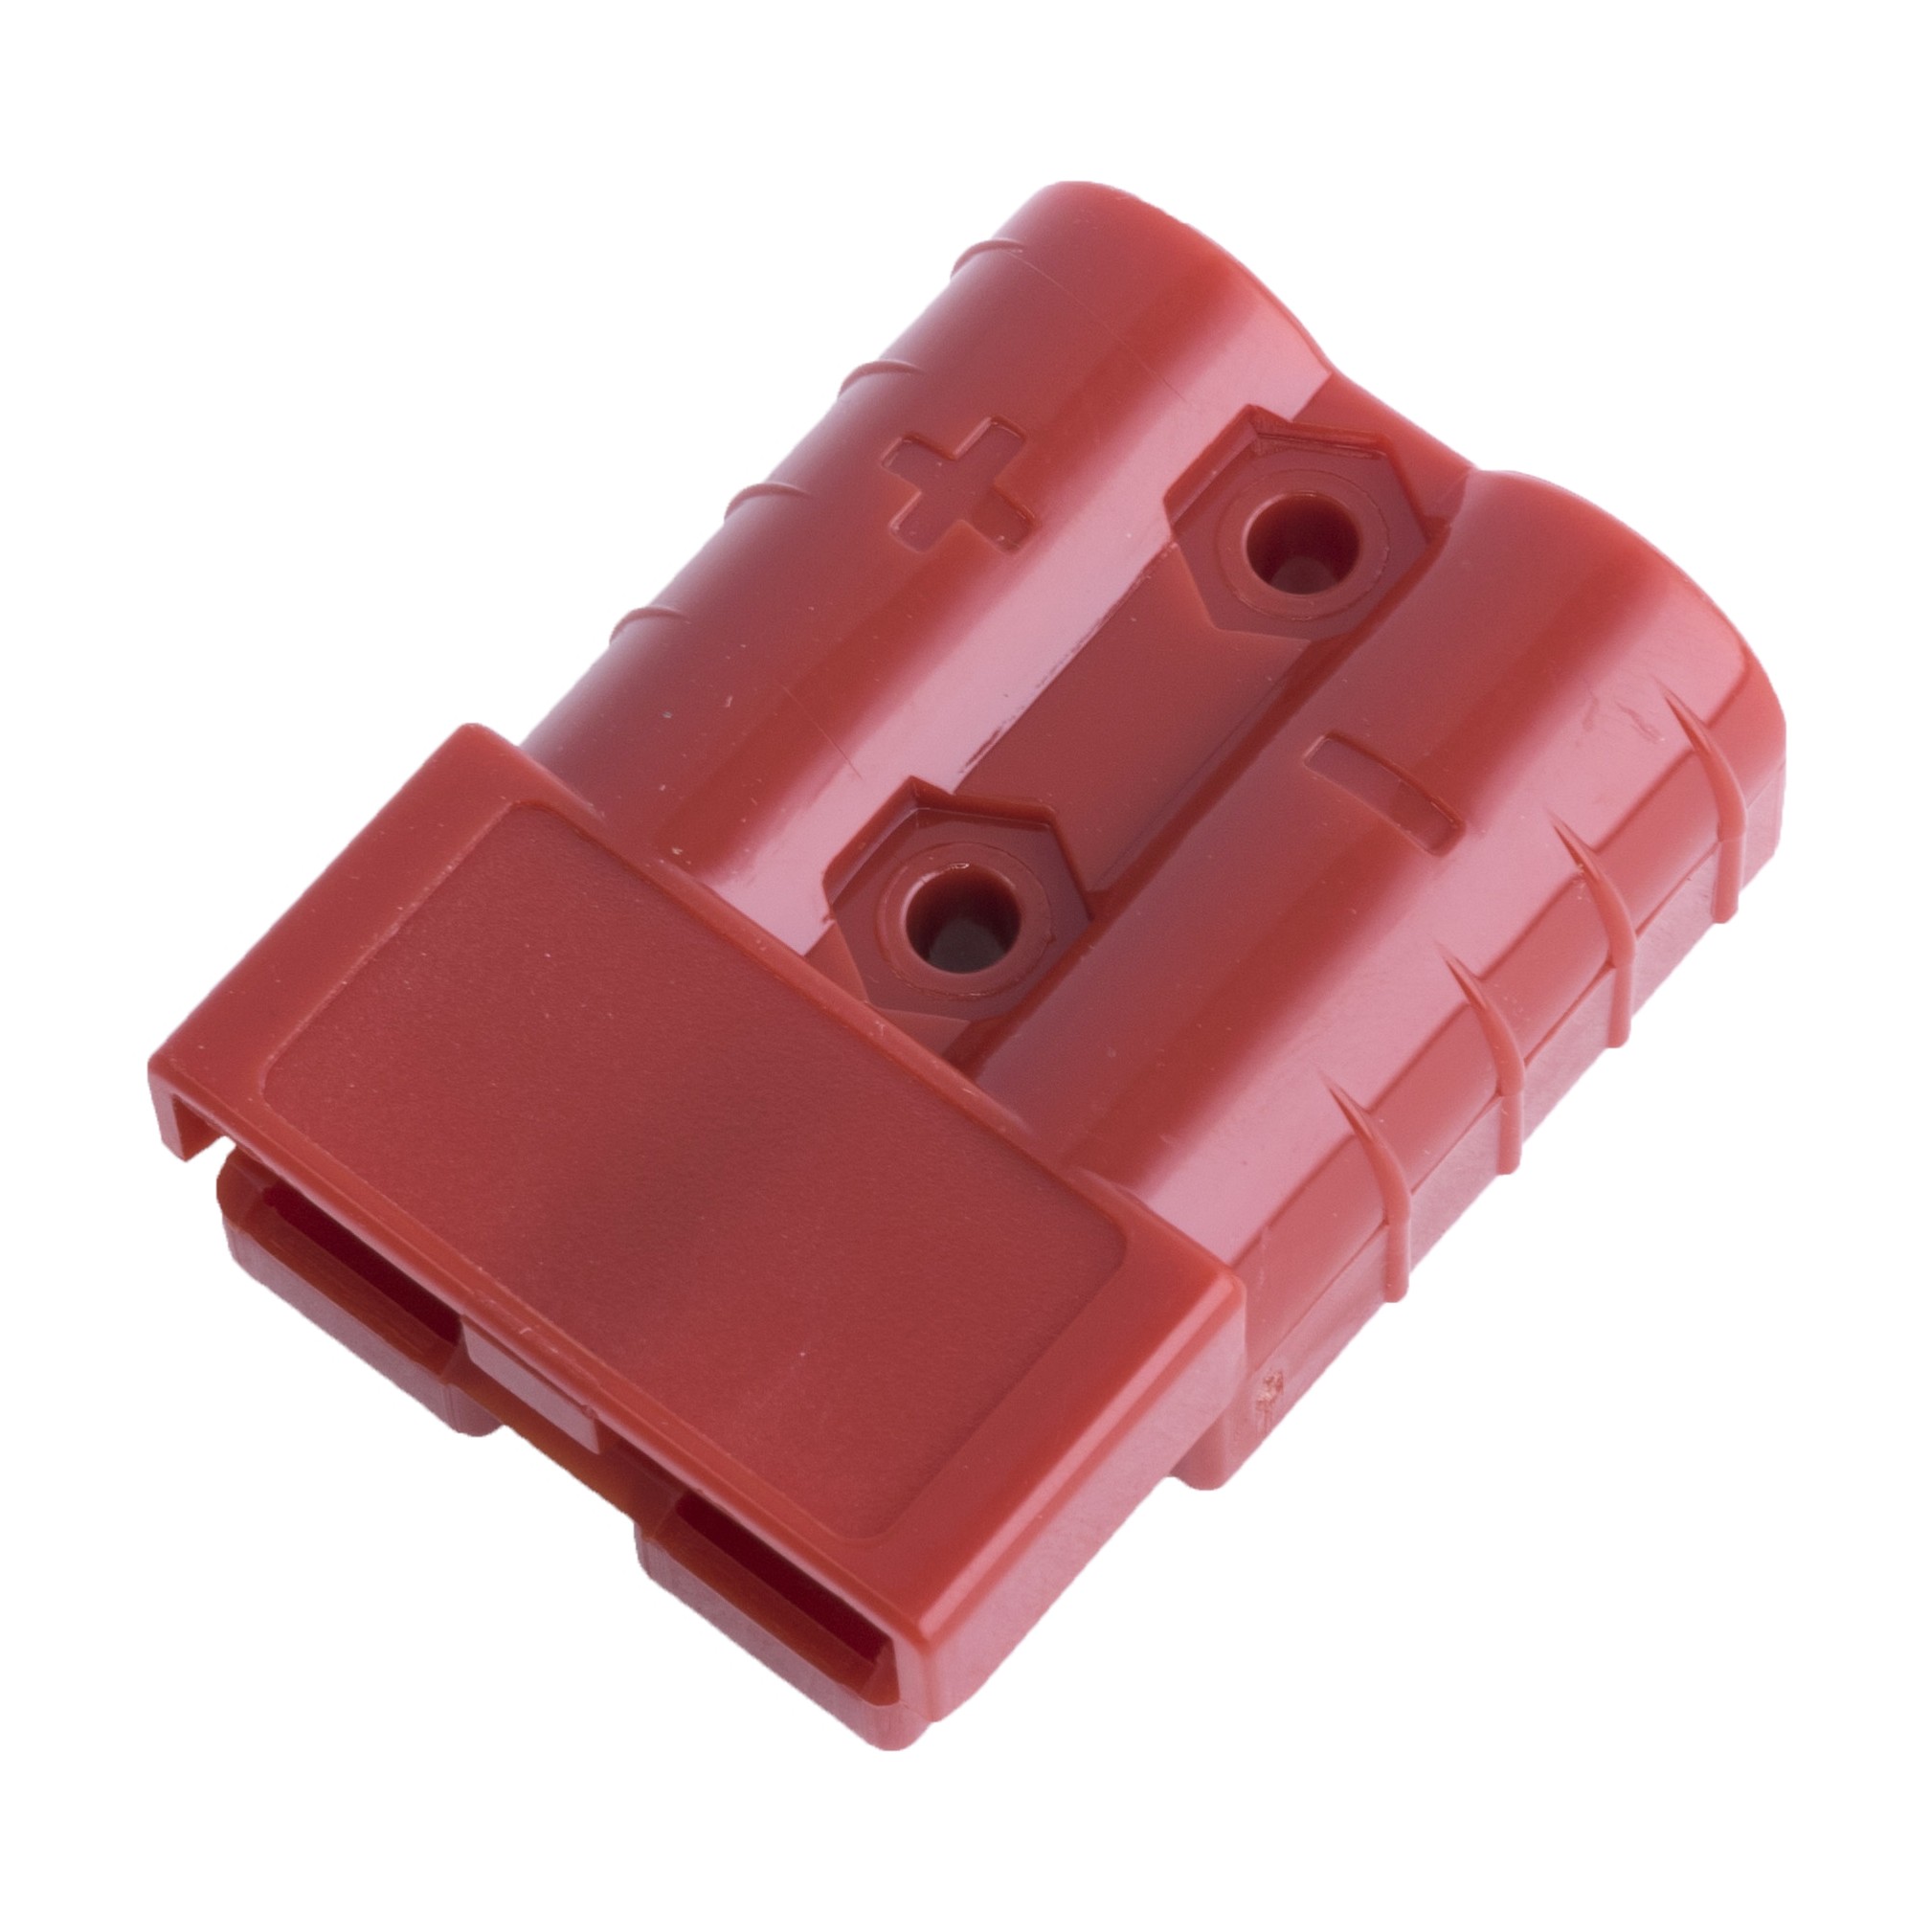 Anderson SB50 Stecker, 2 Kontakte, rot, 50A (L-KLS1-XT27-H-R)